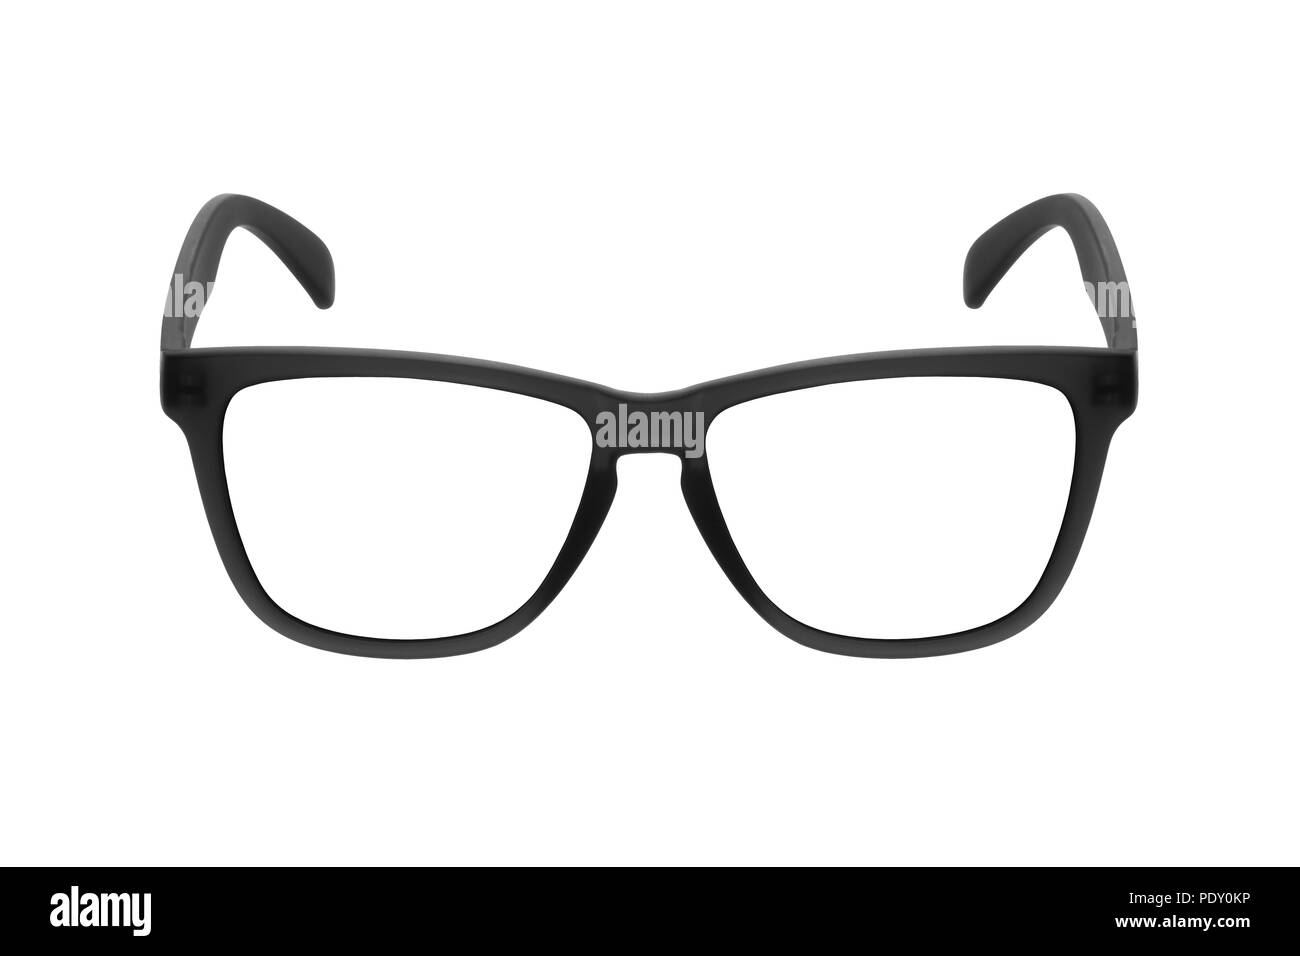 Ojos gafas de marco negro aislado sobre fondo blanco Fotografía de stock -  Alamy